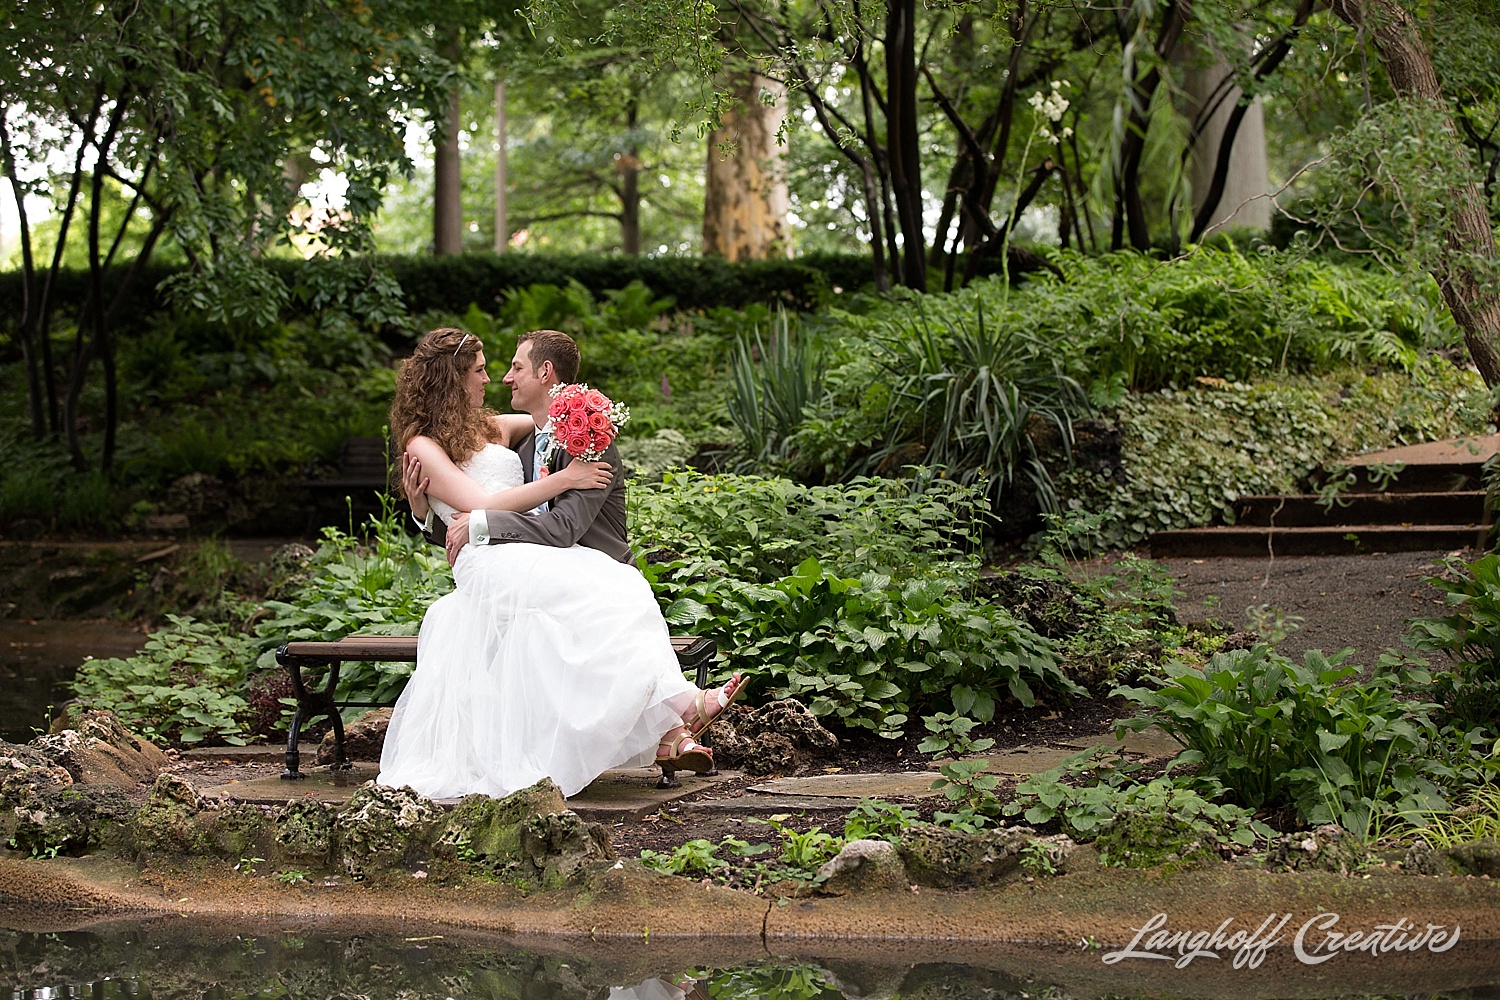 WeddingPhotography-NCwedding-RaleighWedding-WeddingPhotographer-2015-OutdoorWedding-Steckman-LanghoffCreative_27-photo.jpg